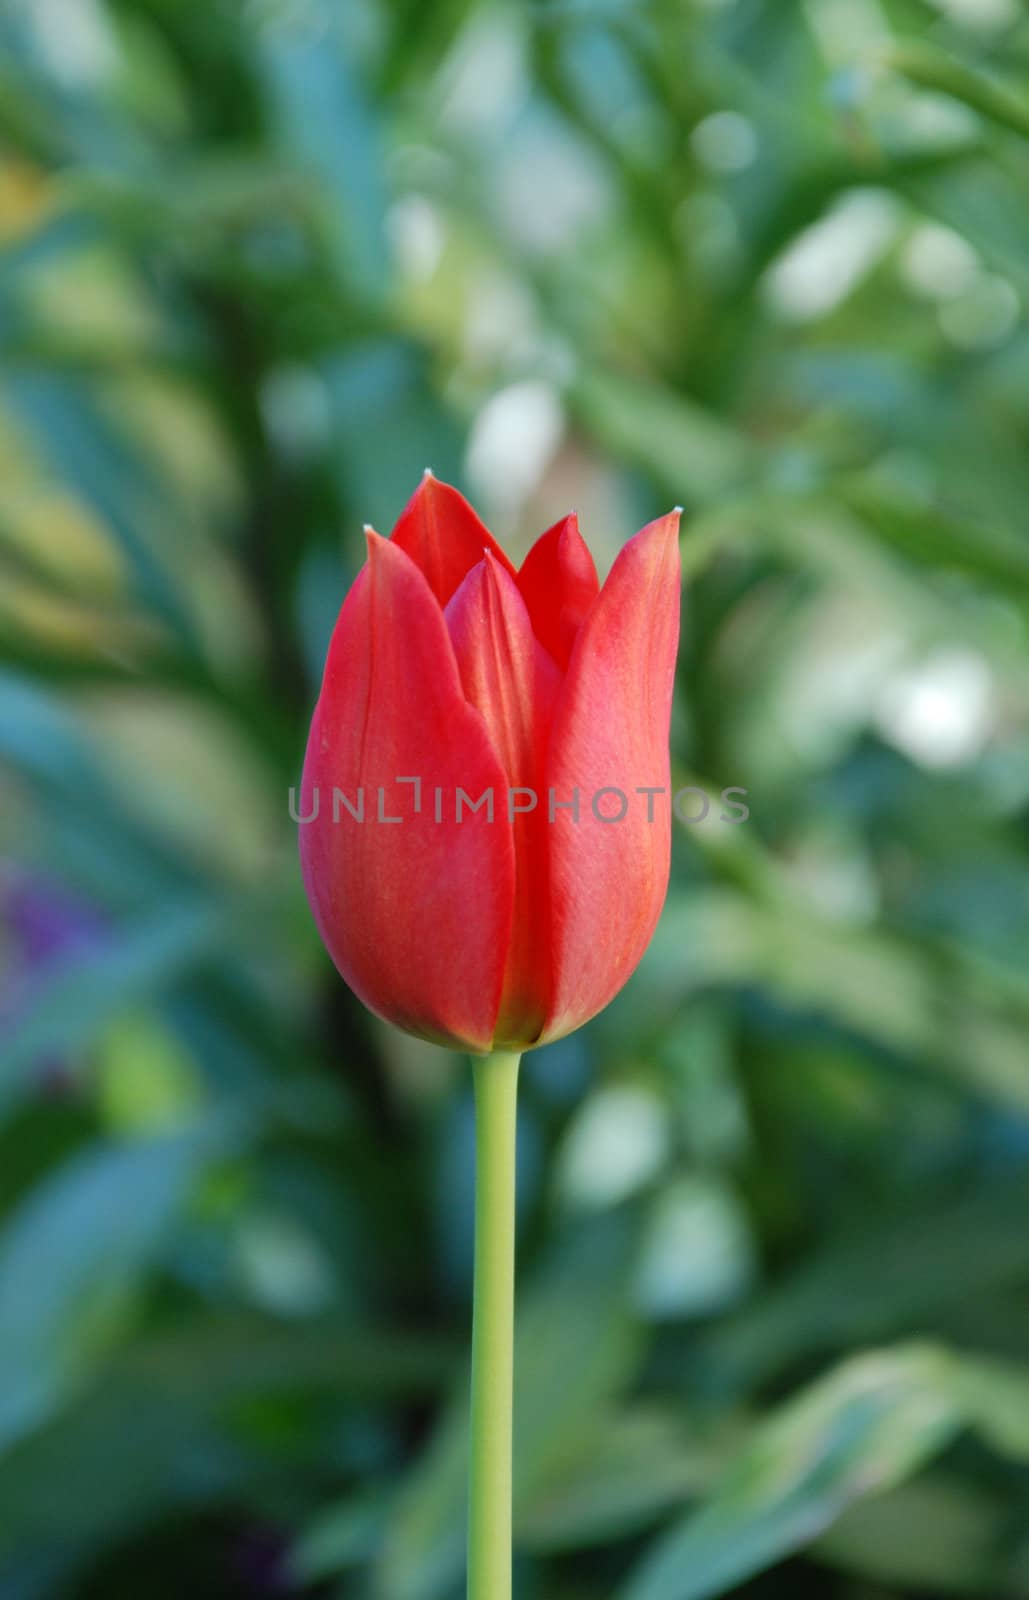 multicolored tulips